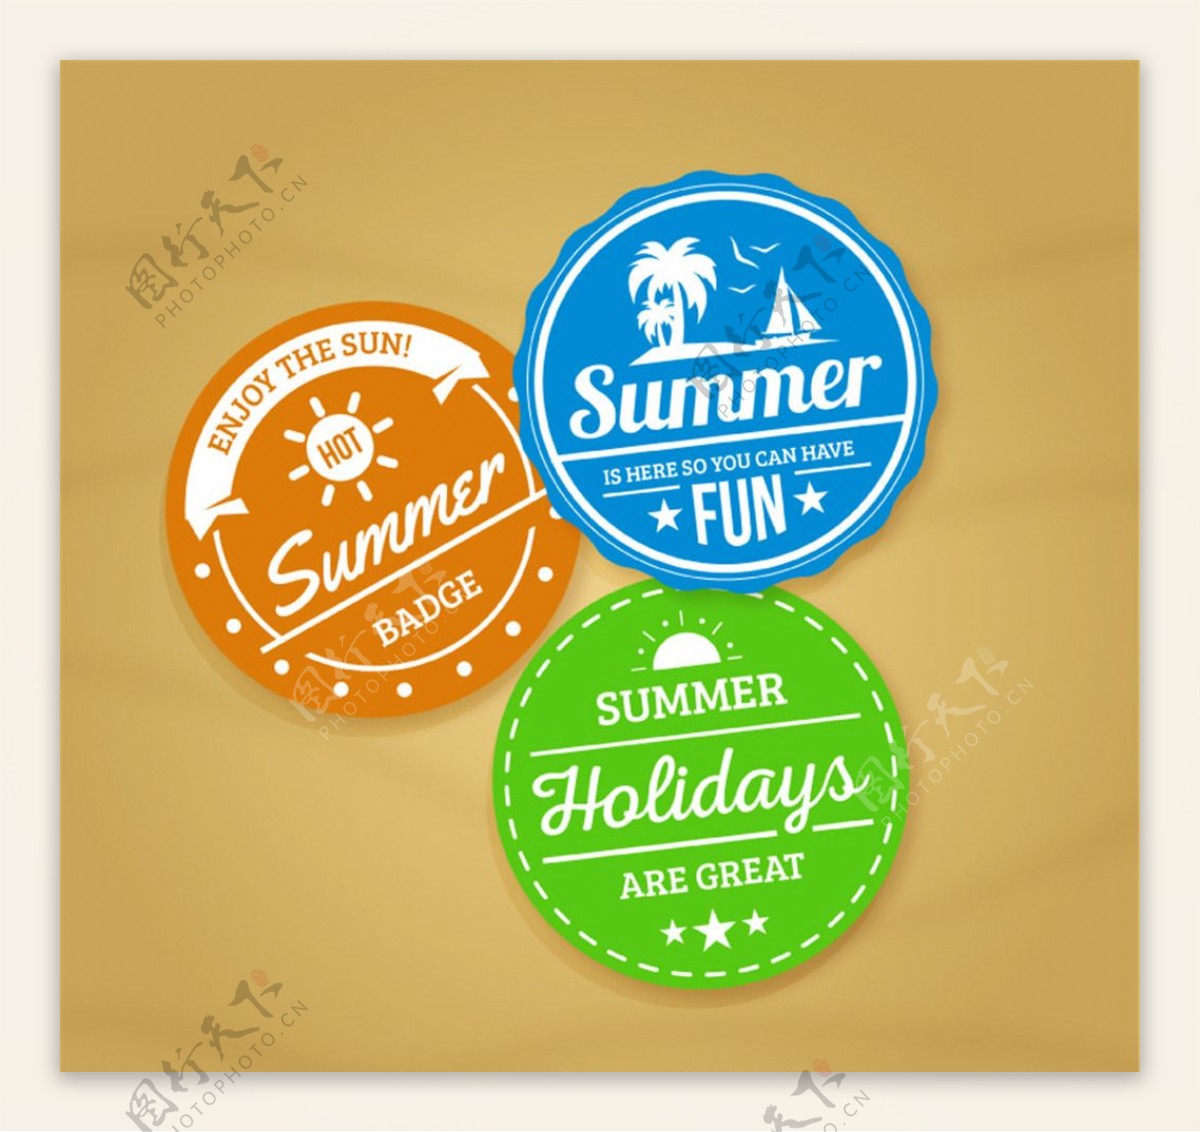 彩色夏季度假标签矢量素材